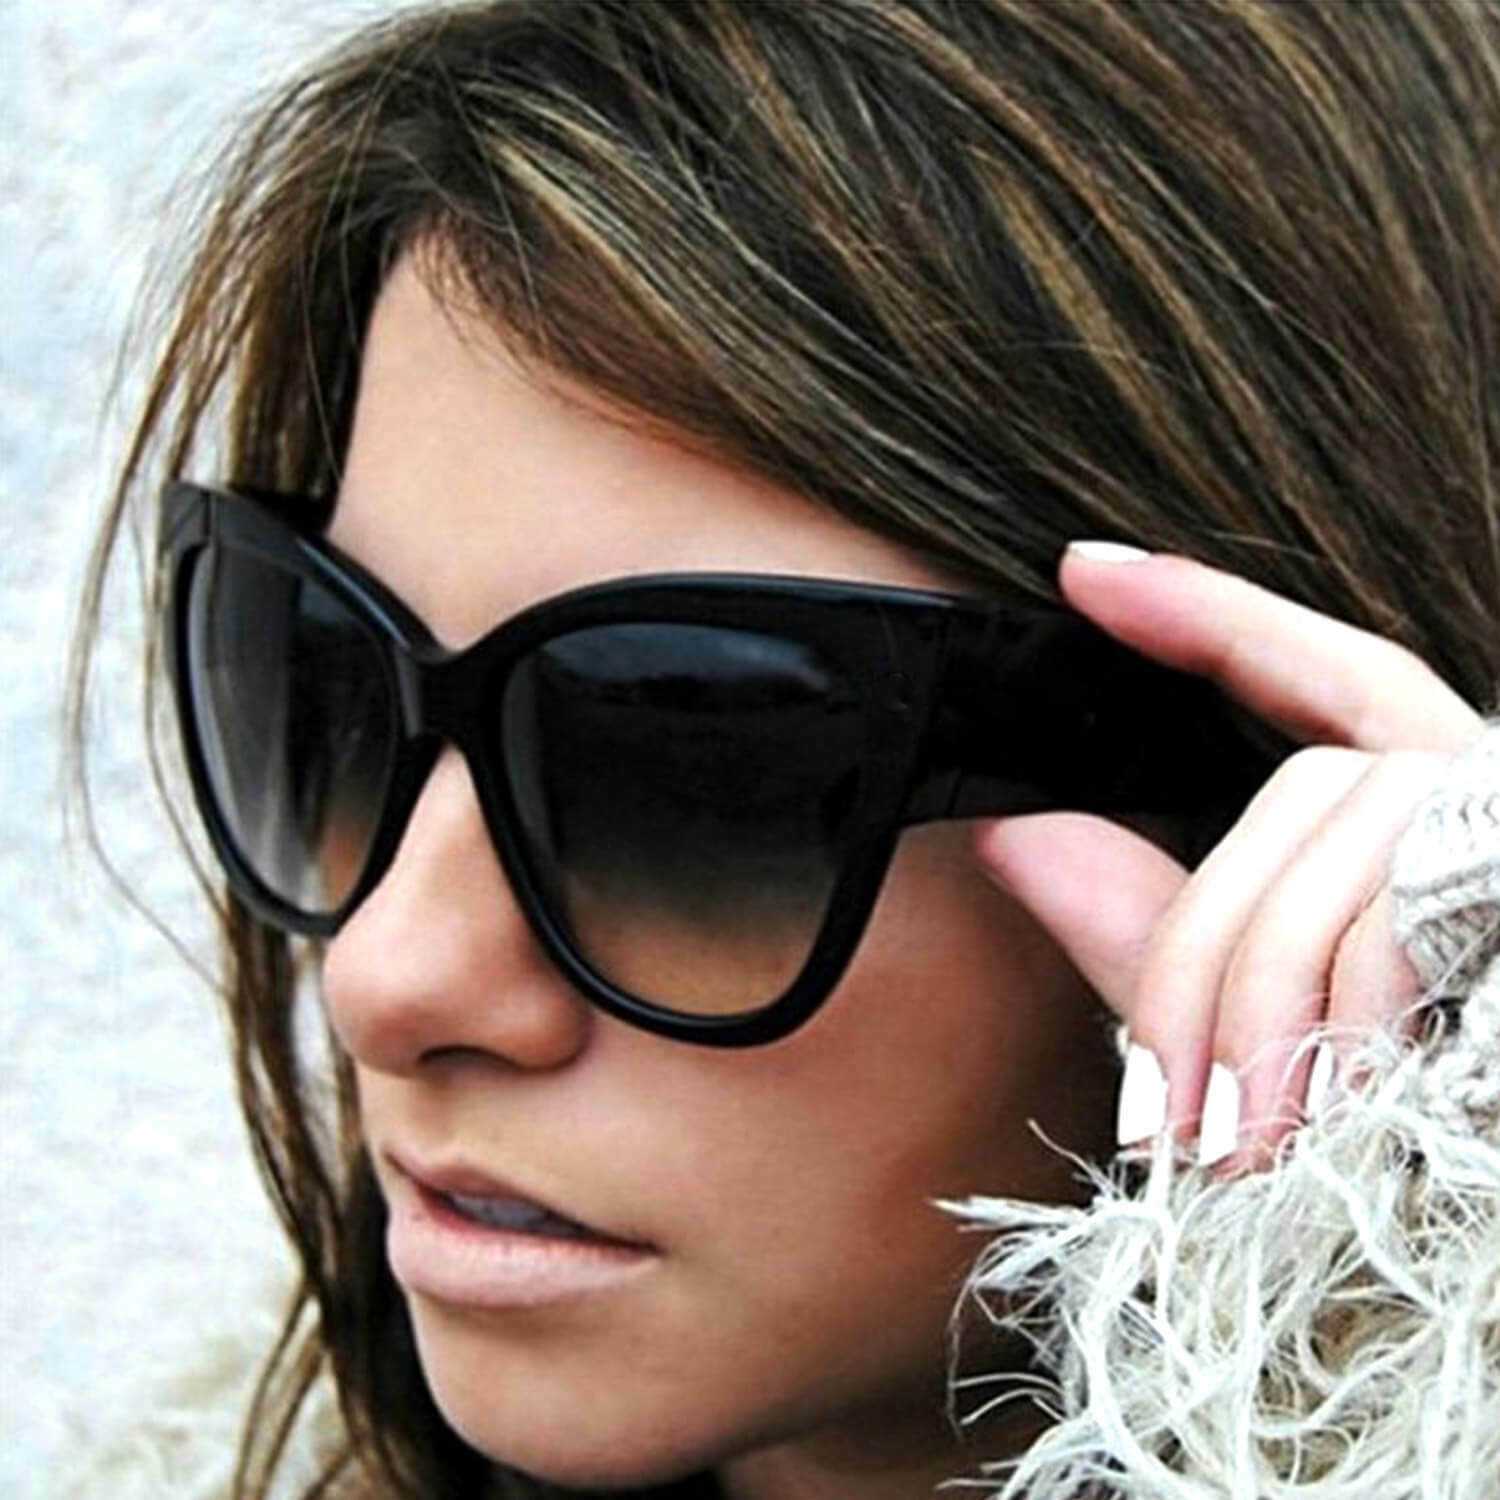 Самые модные солнцезащитные очки 2020-2021 году: тенденции, новинки, для девушек, фото